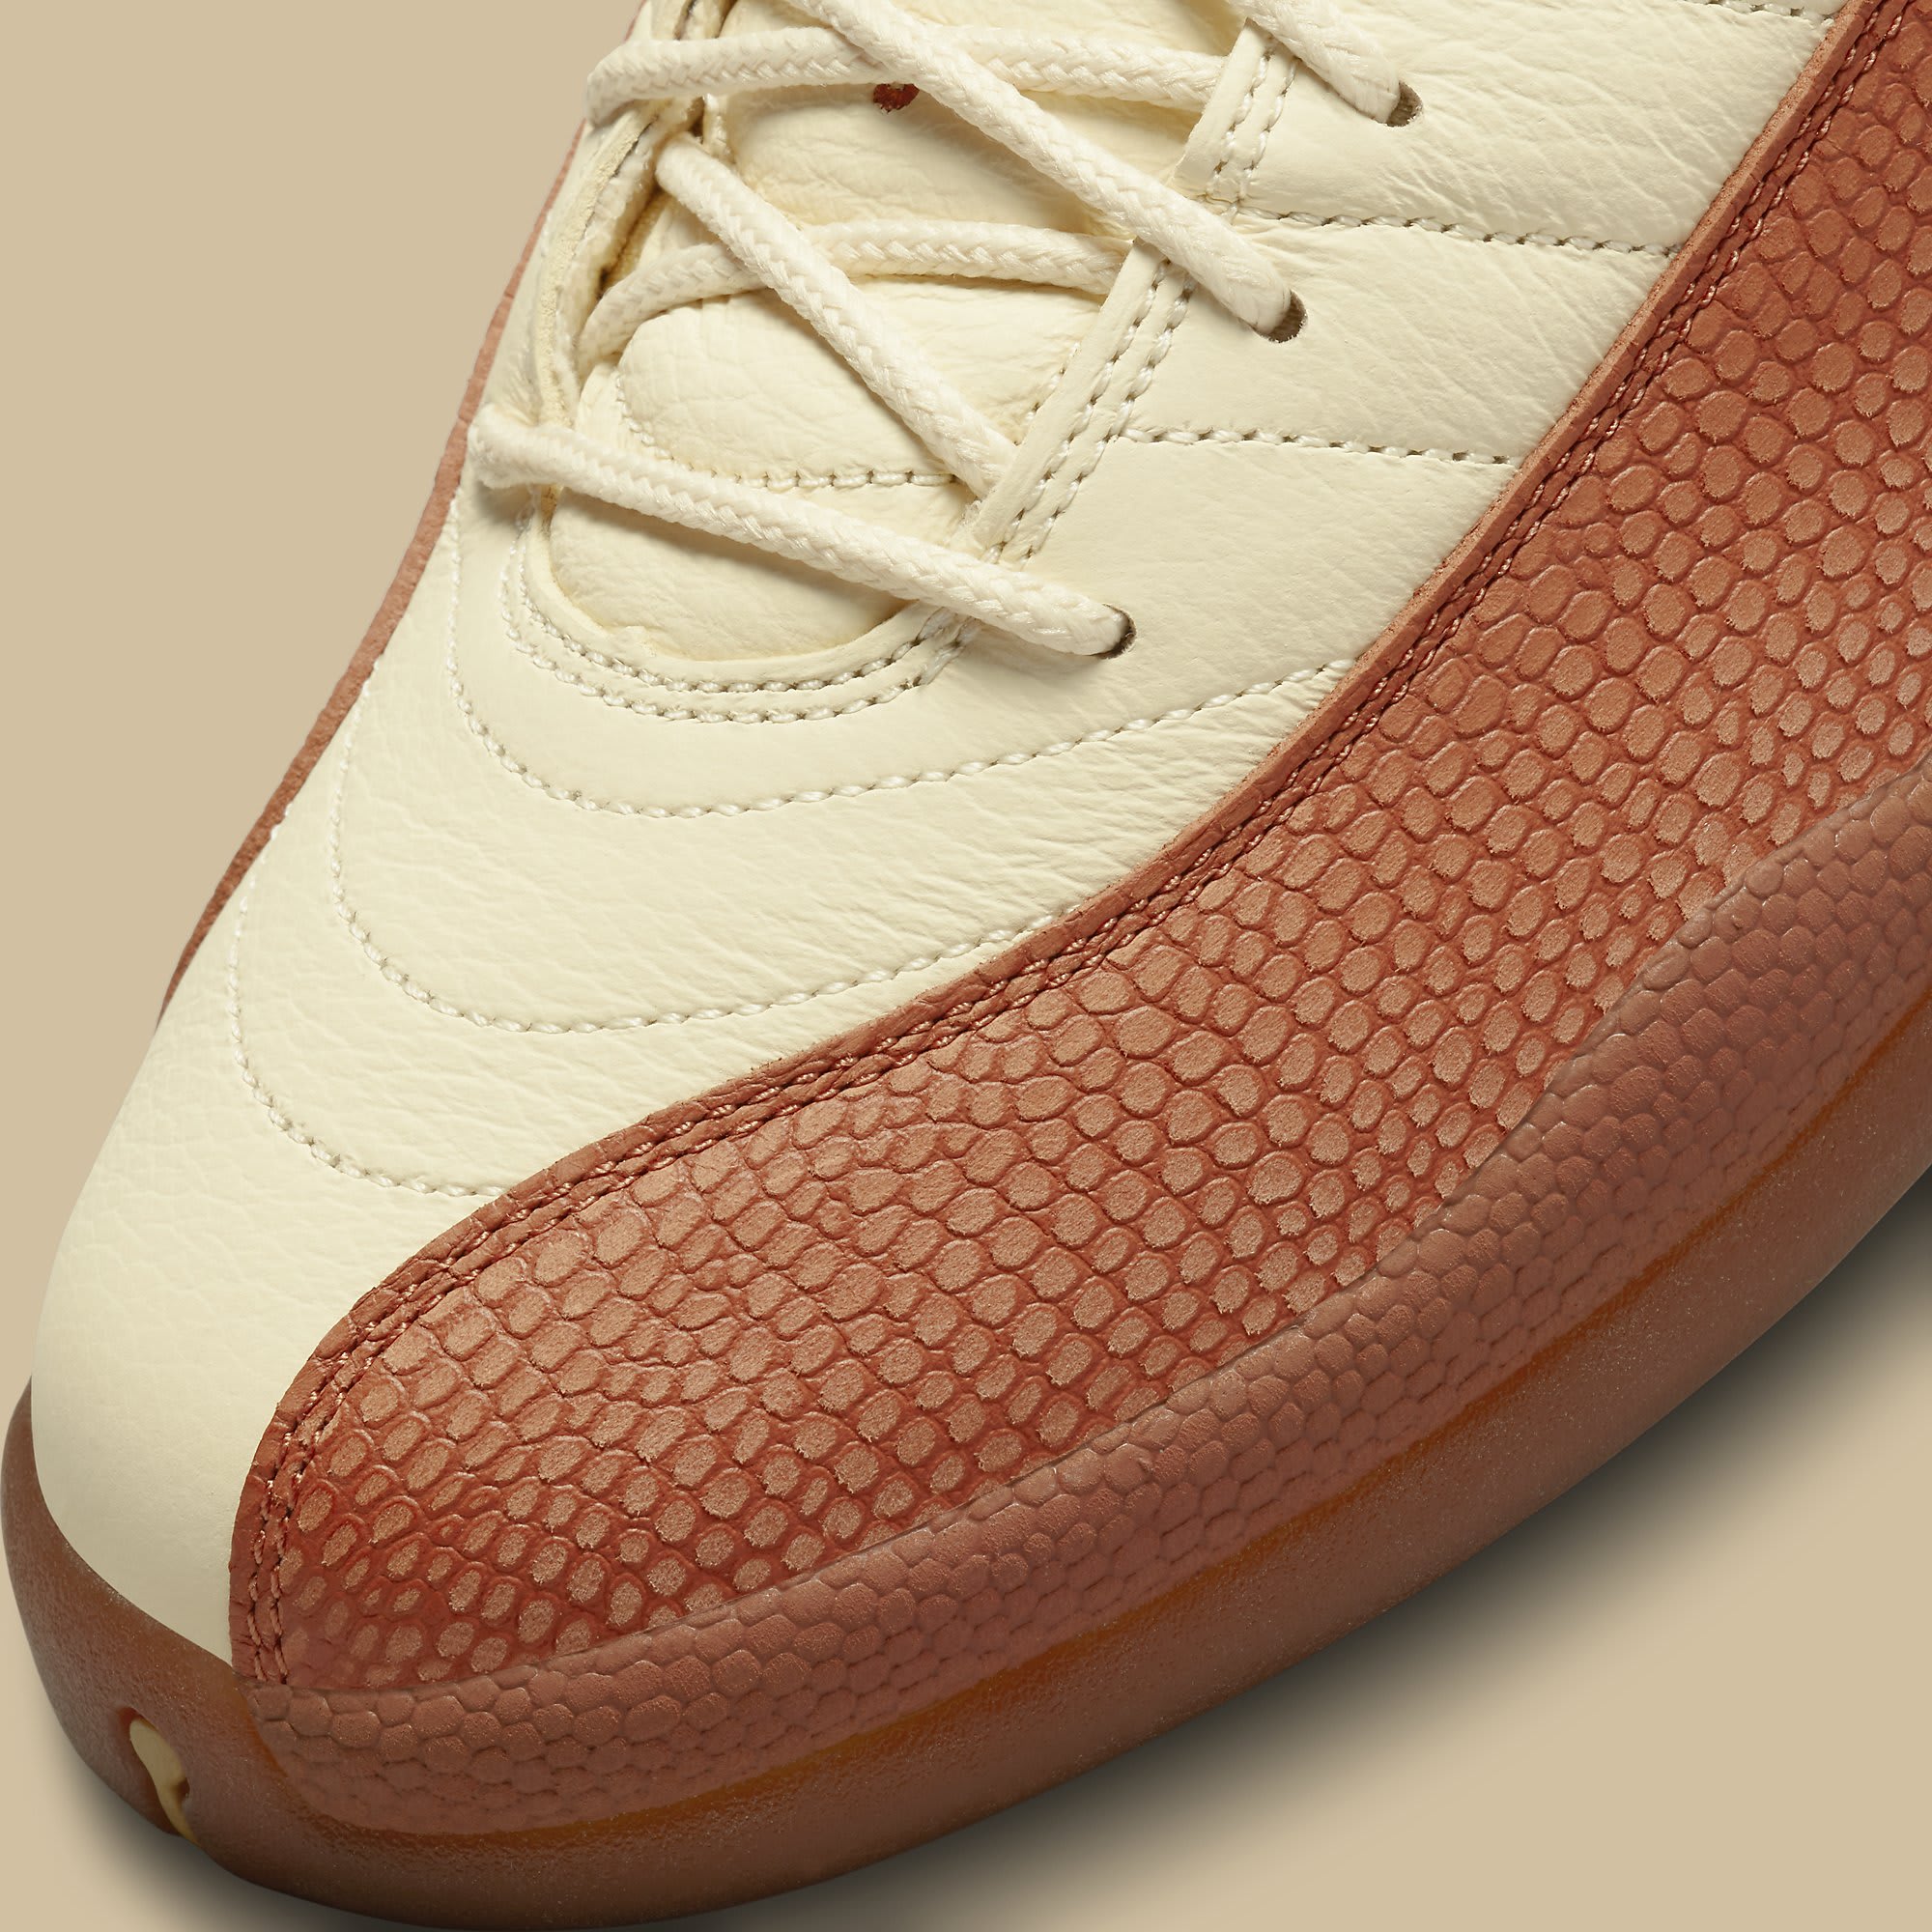 Eastside Golf x Air Jordan 12 : r/luckshoesSneakers